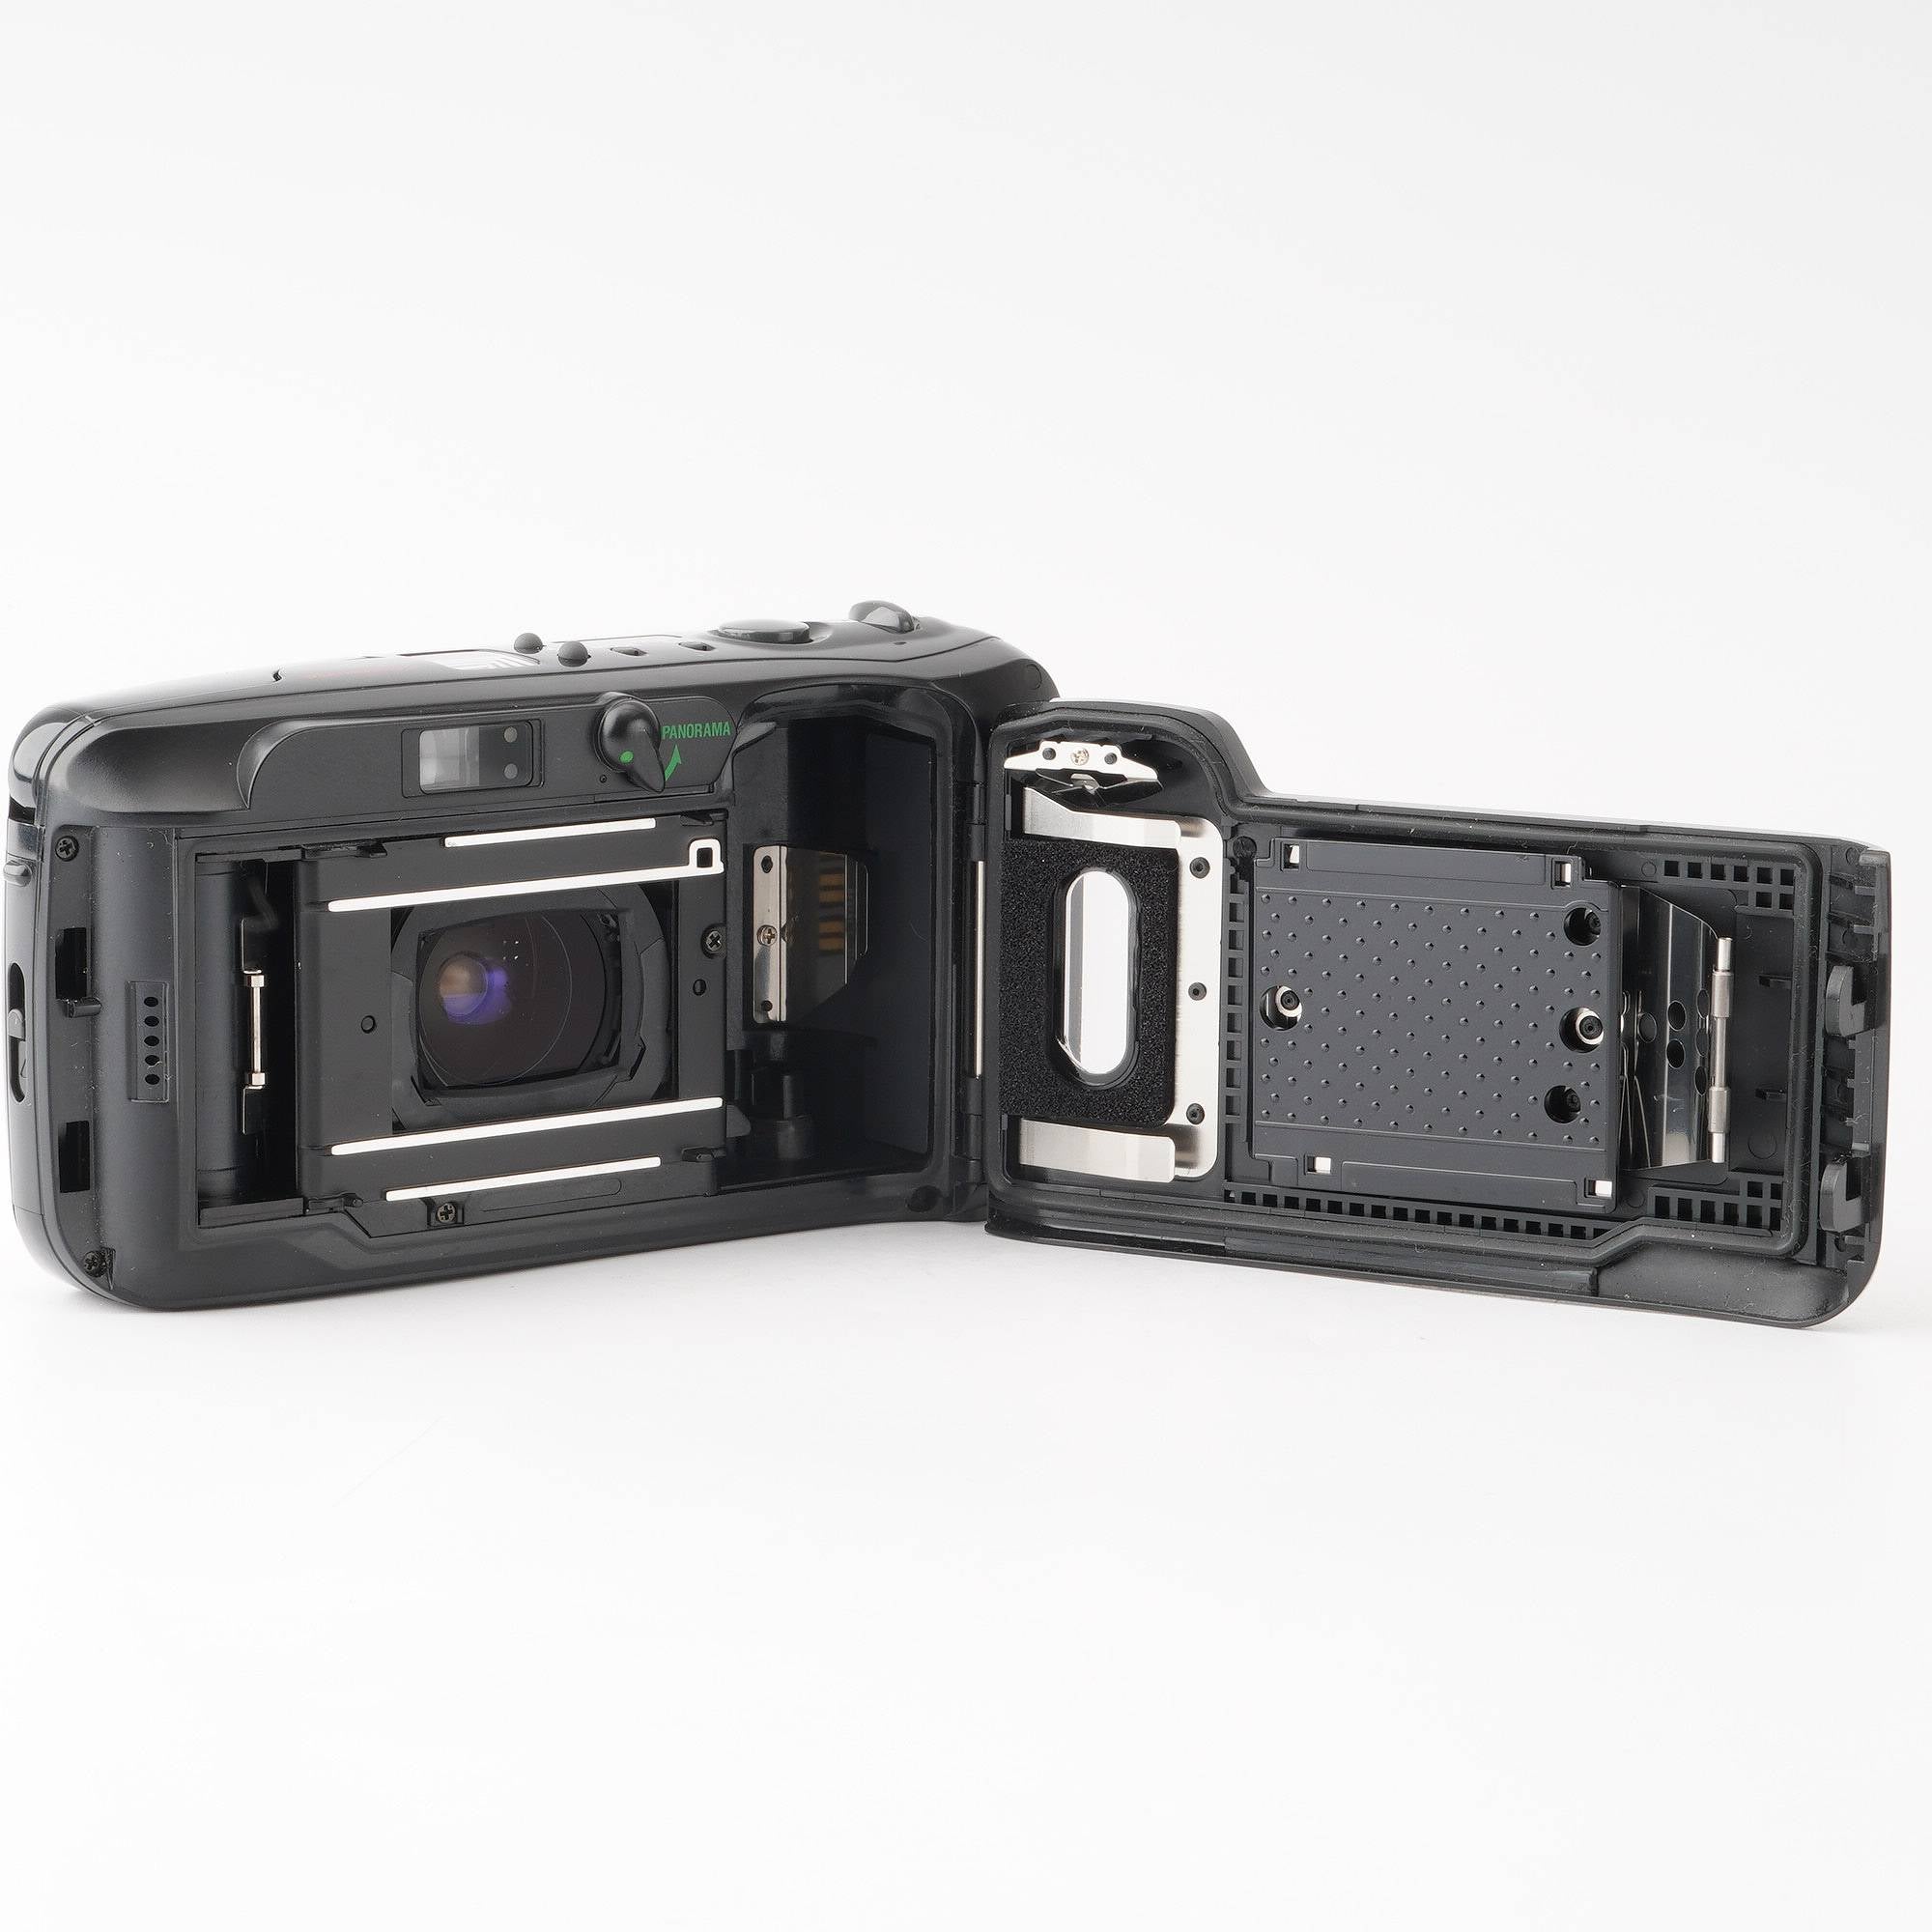 オリンパス Olympus μ ミュー ZOOM PANORAMA ブラック 35-70mm – Natural Camera / ナチュラルカメラ